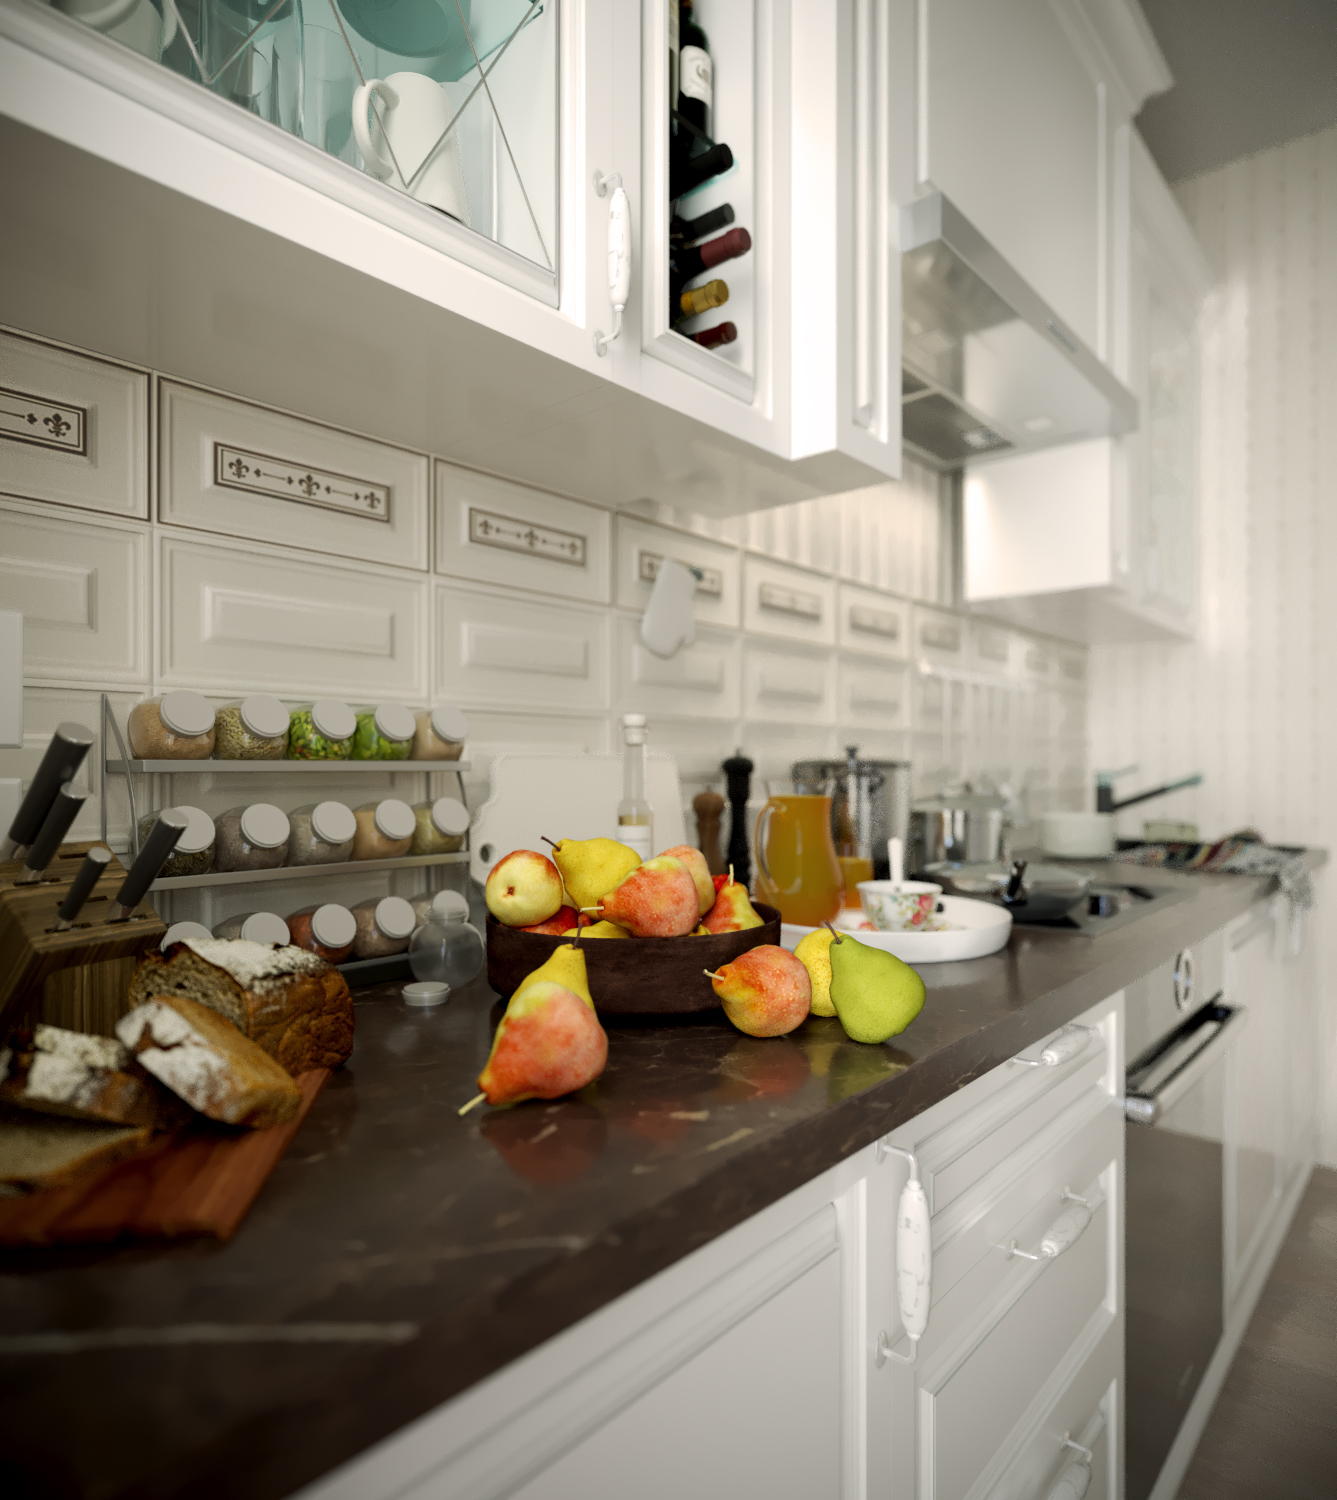 Visualisation 3D de la cuisine dans 3d max corona render image